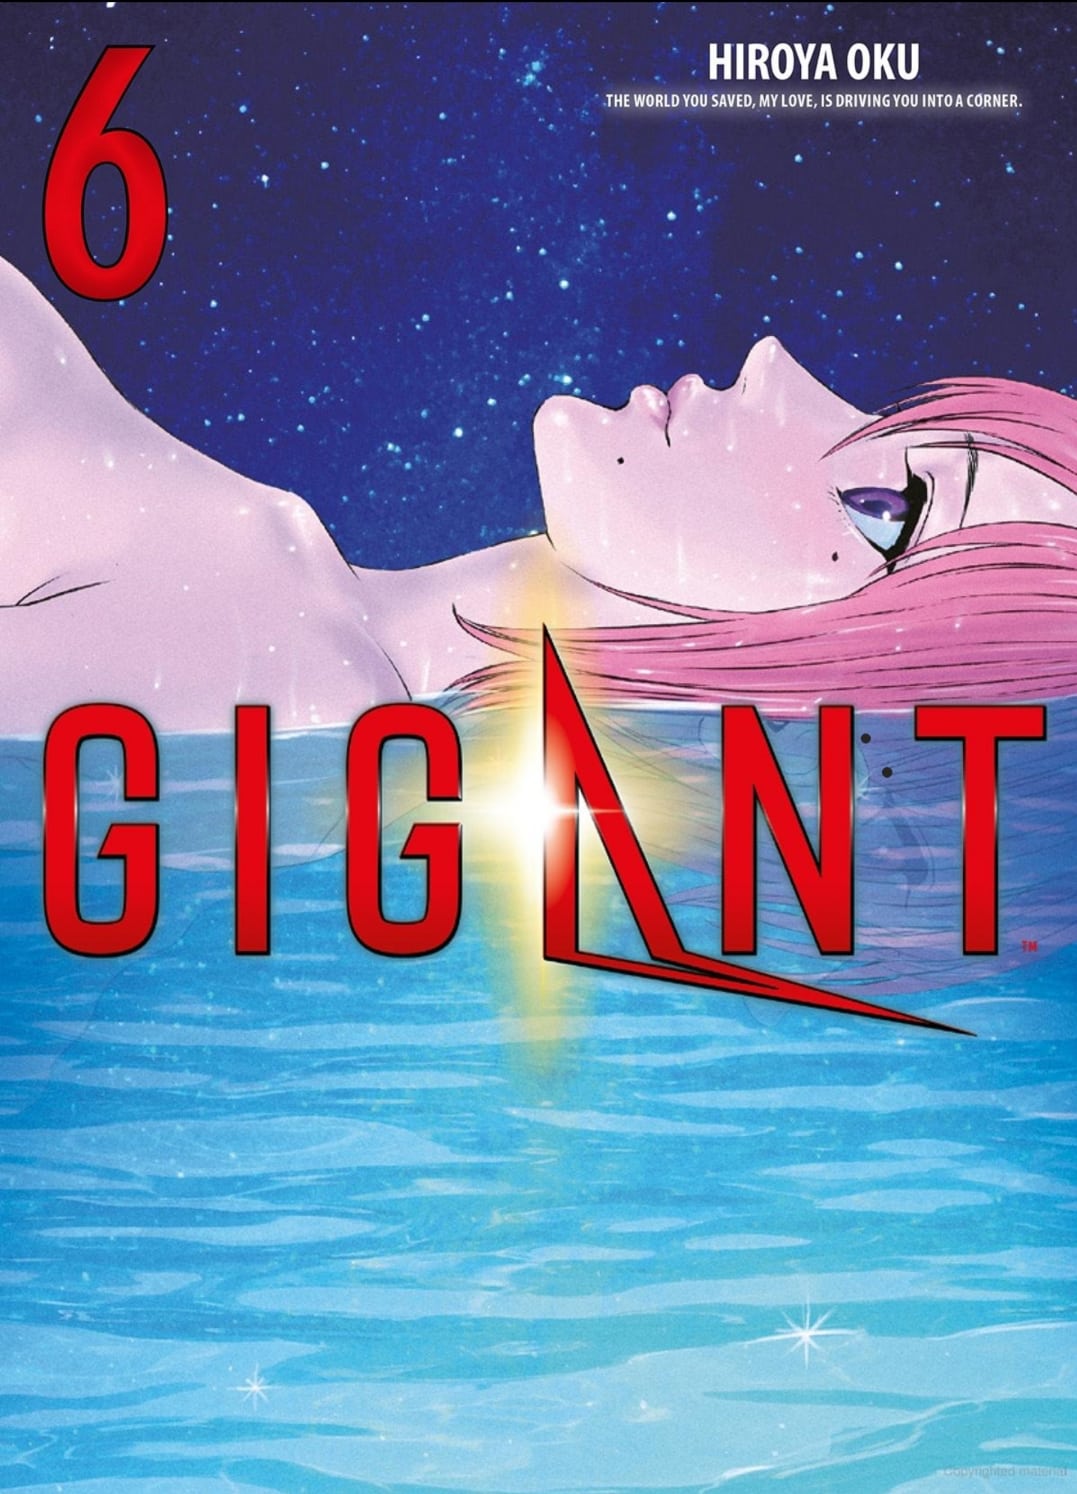 MANGA-REVIEW: GIGANT, BD. 6